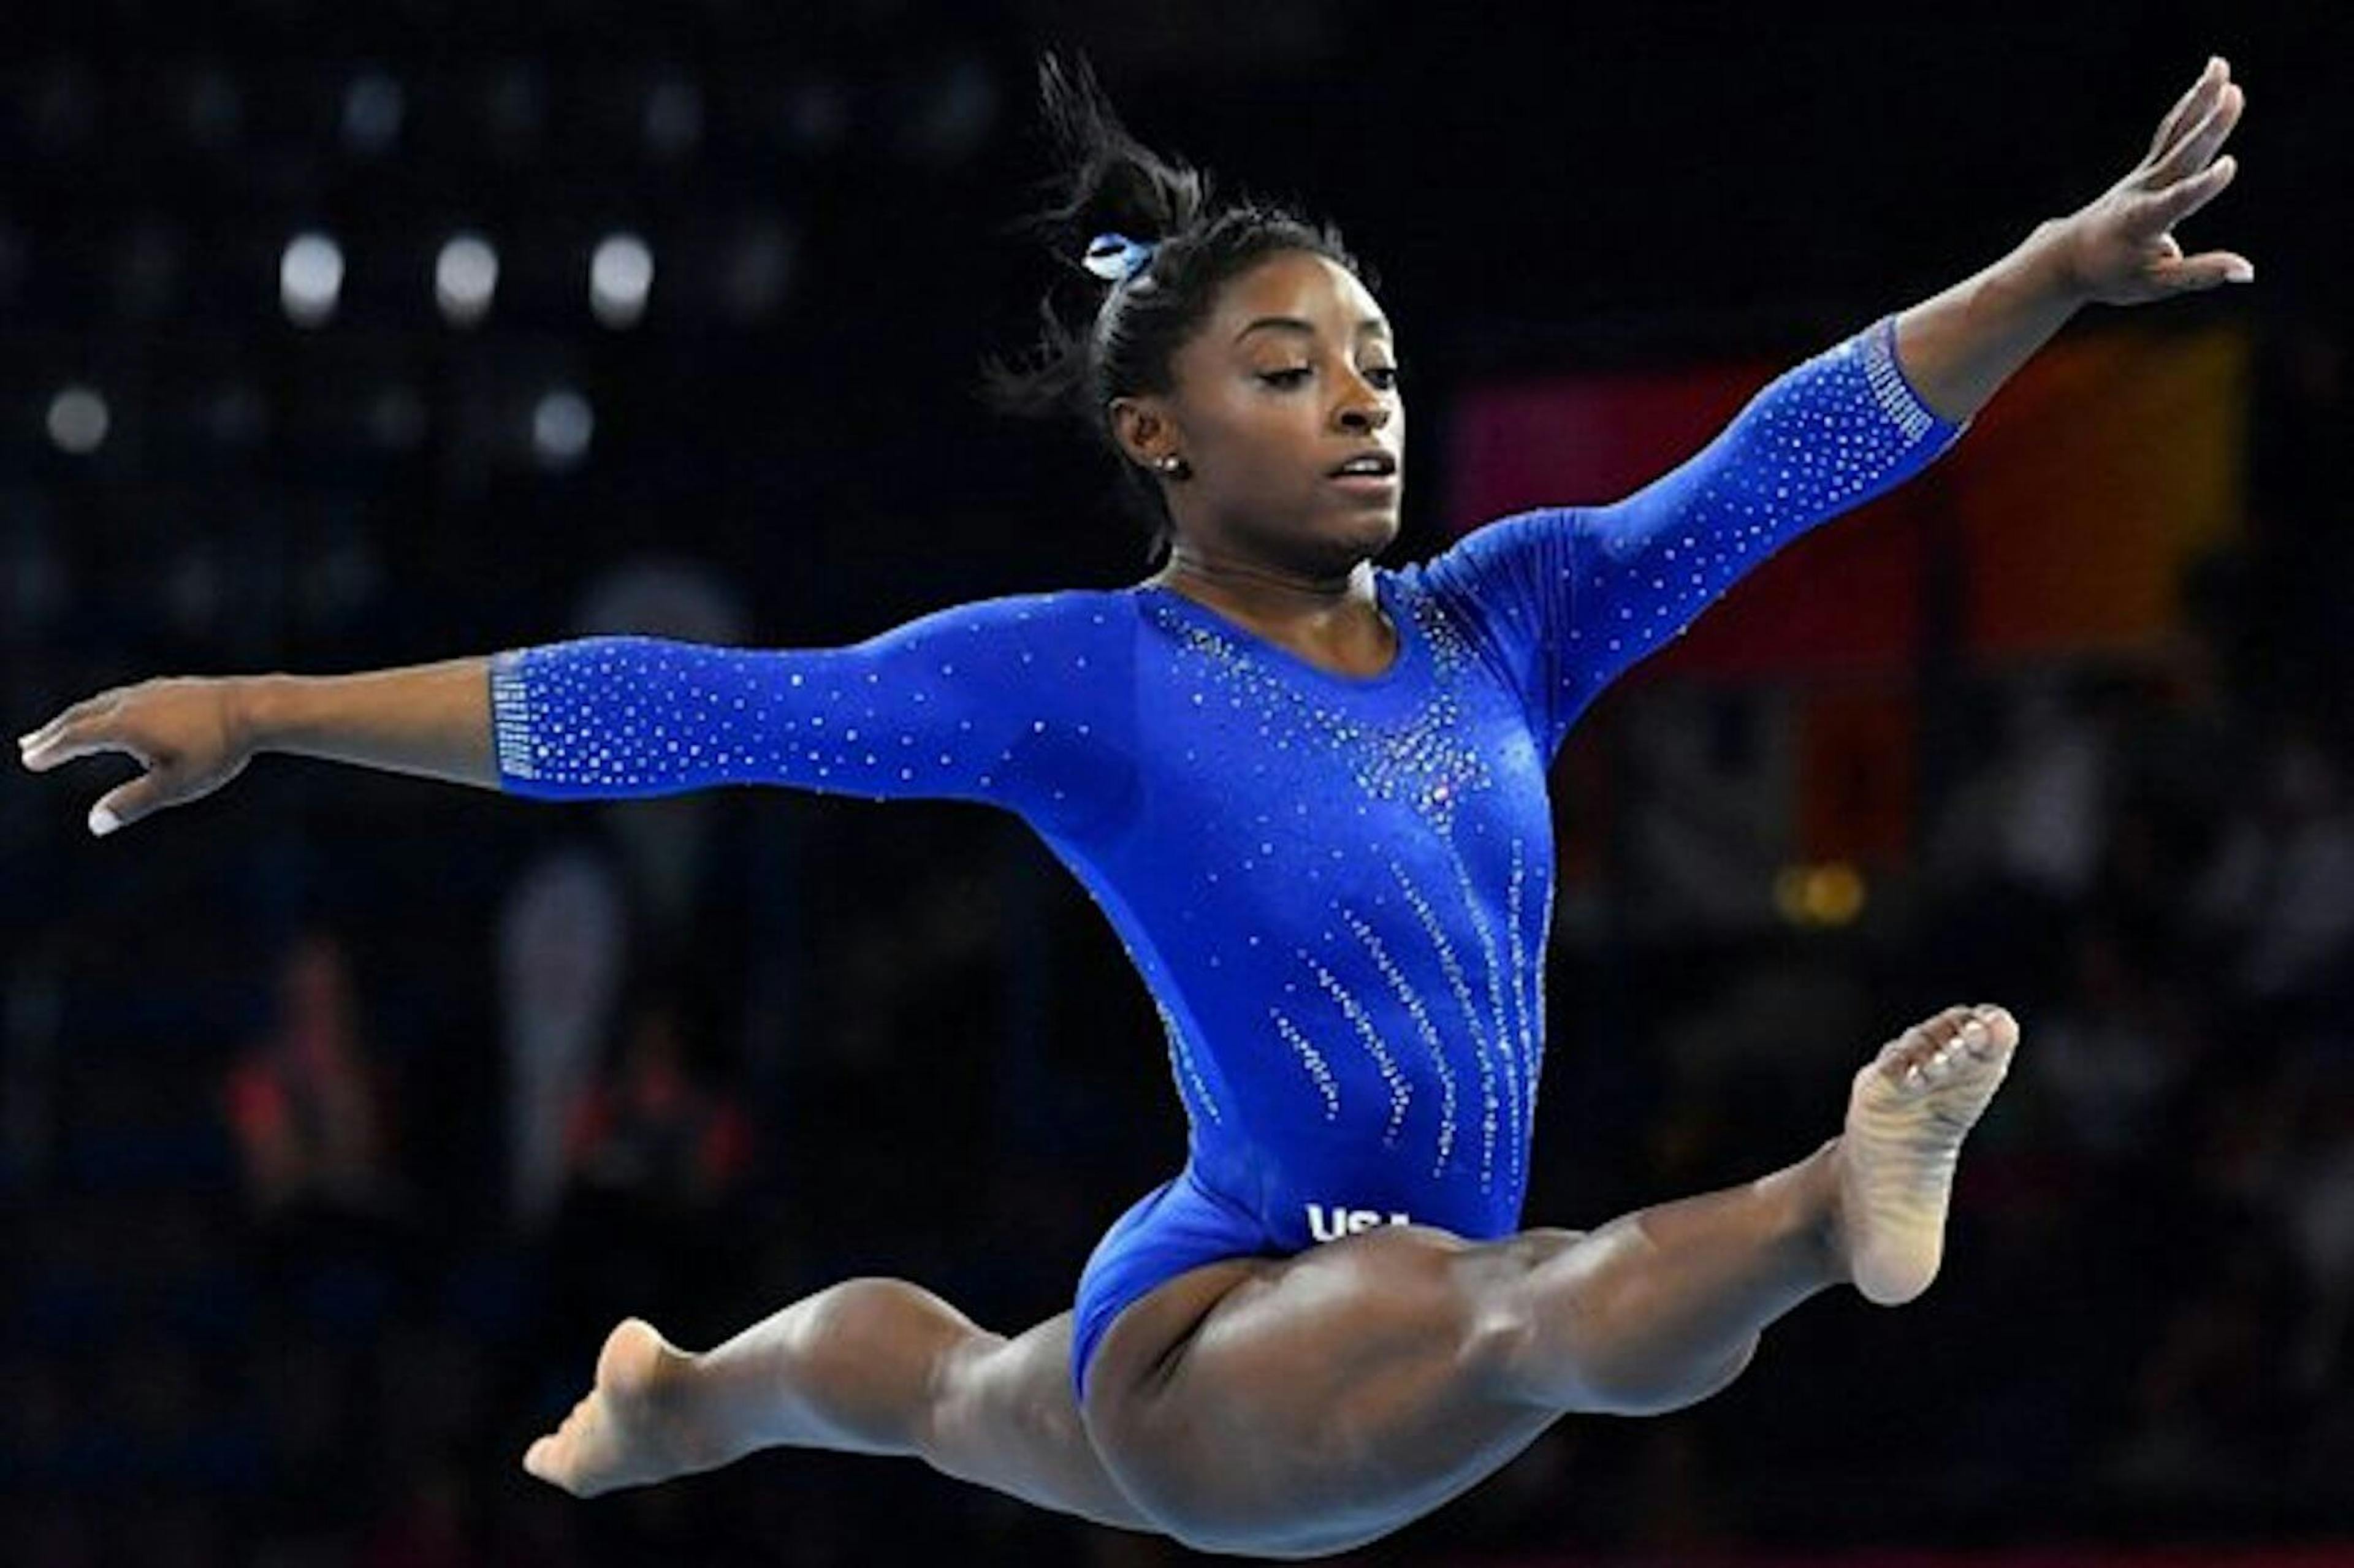 Simone Biles jumping in a blue uniform